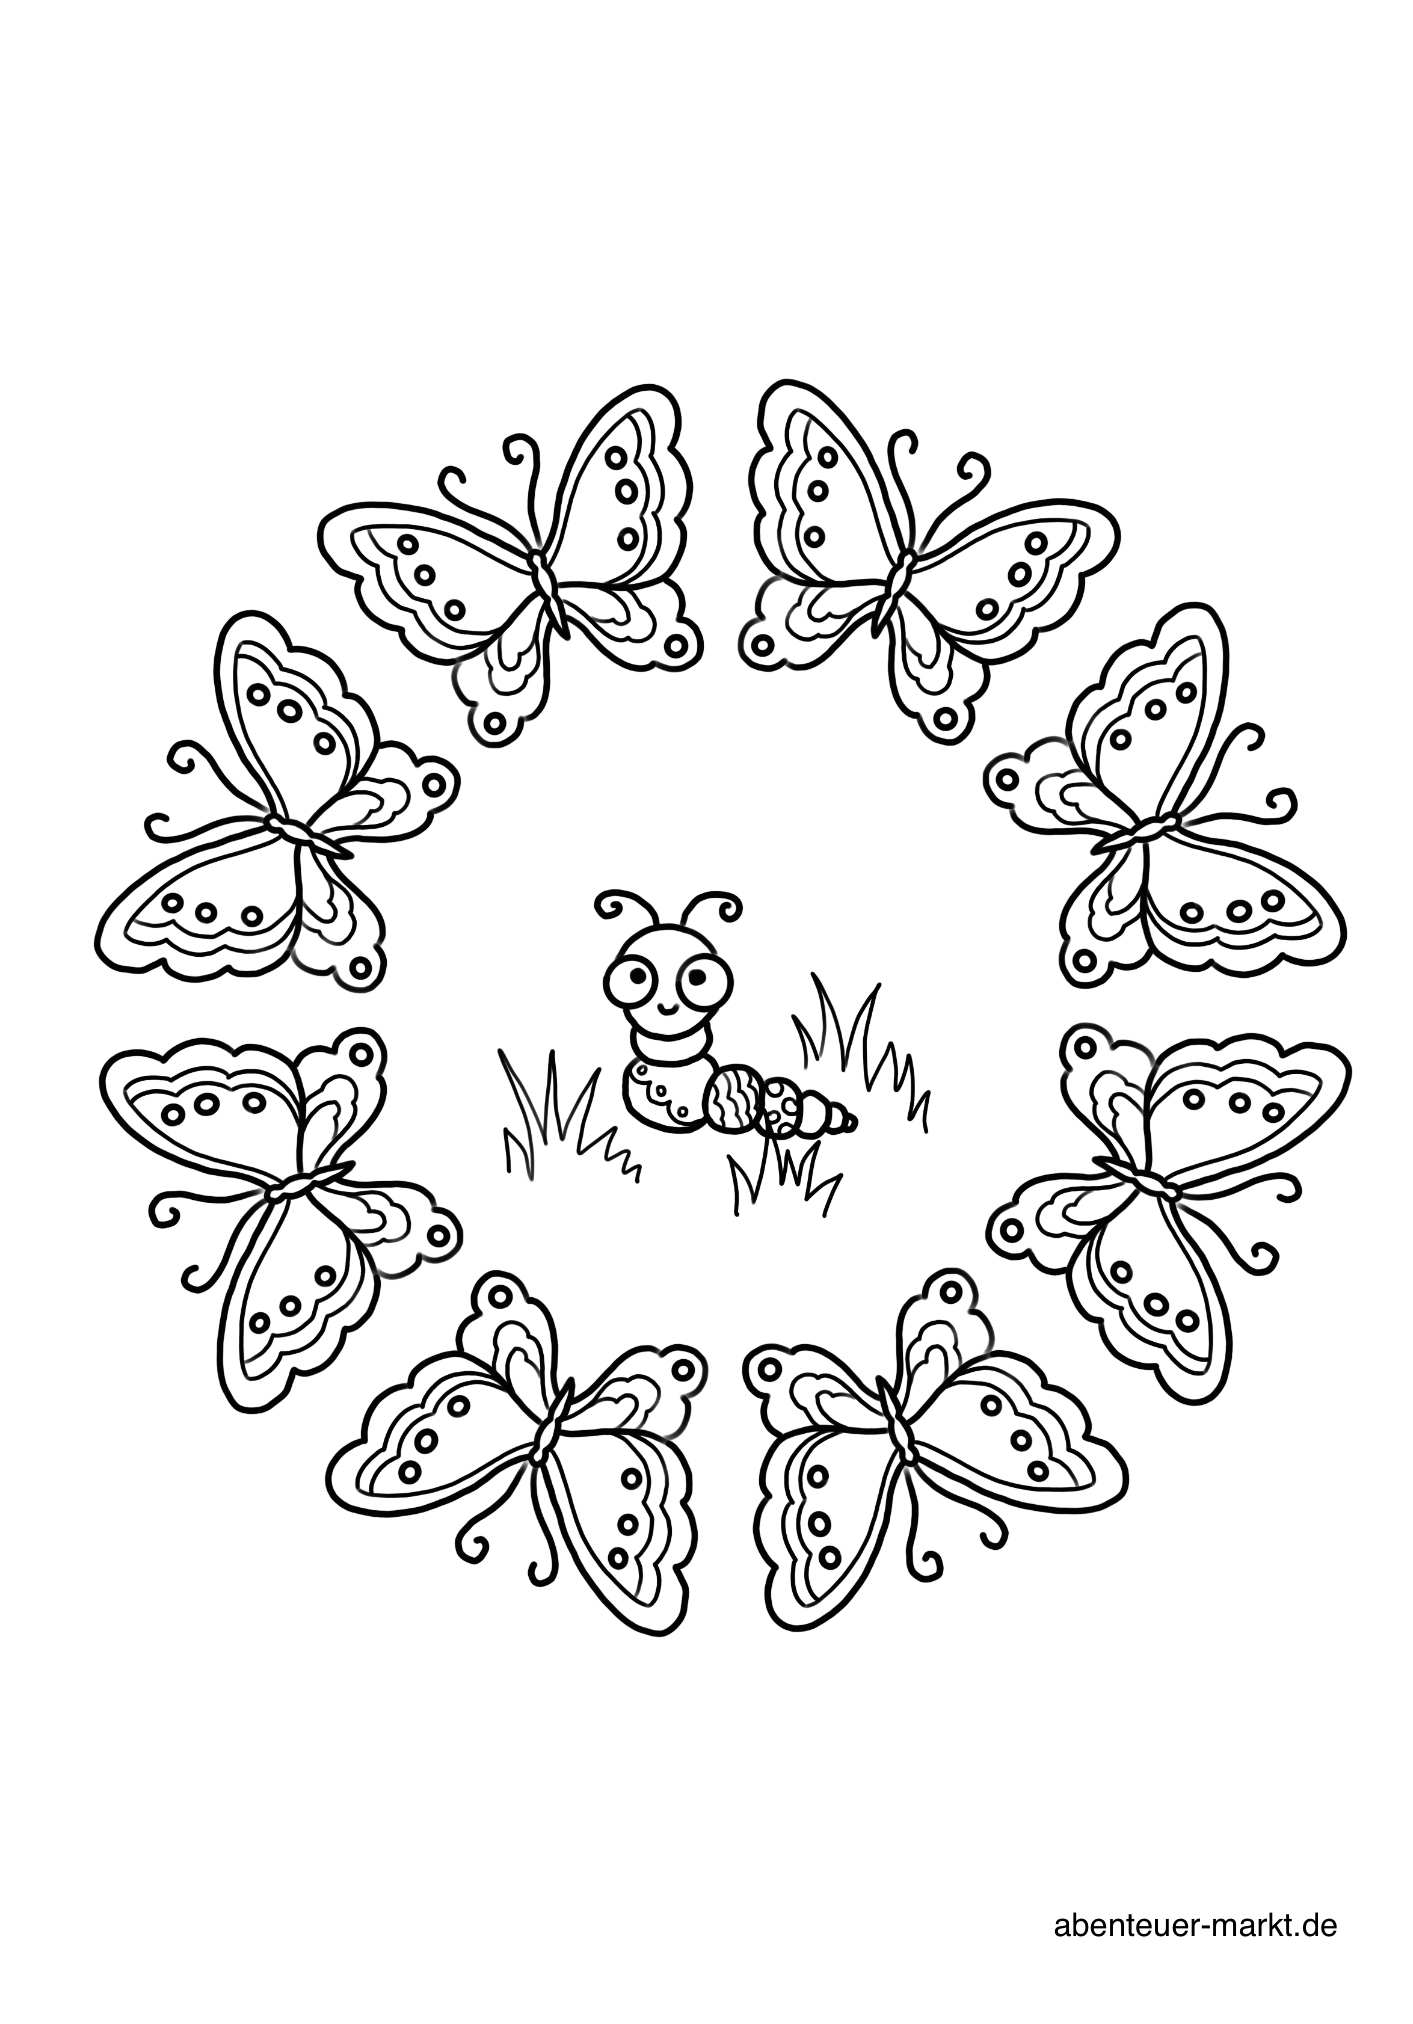 Bild zum Schritt 2 für die Kinder-Beschäftigung: 'Raupe mit Schmetterlingen'